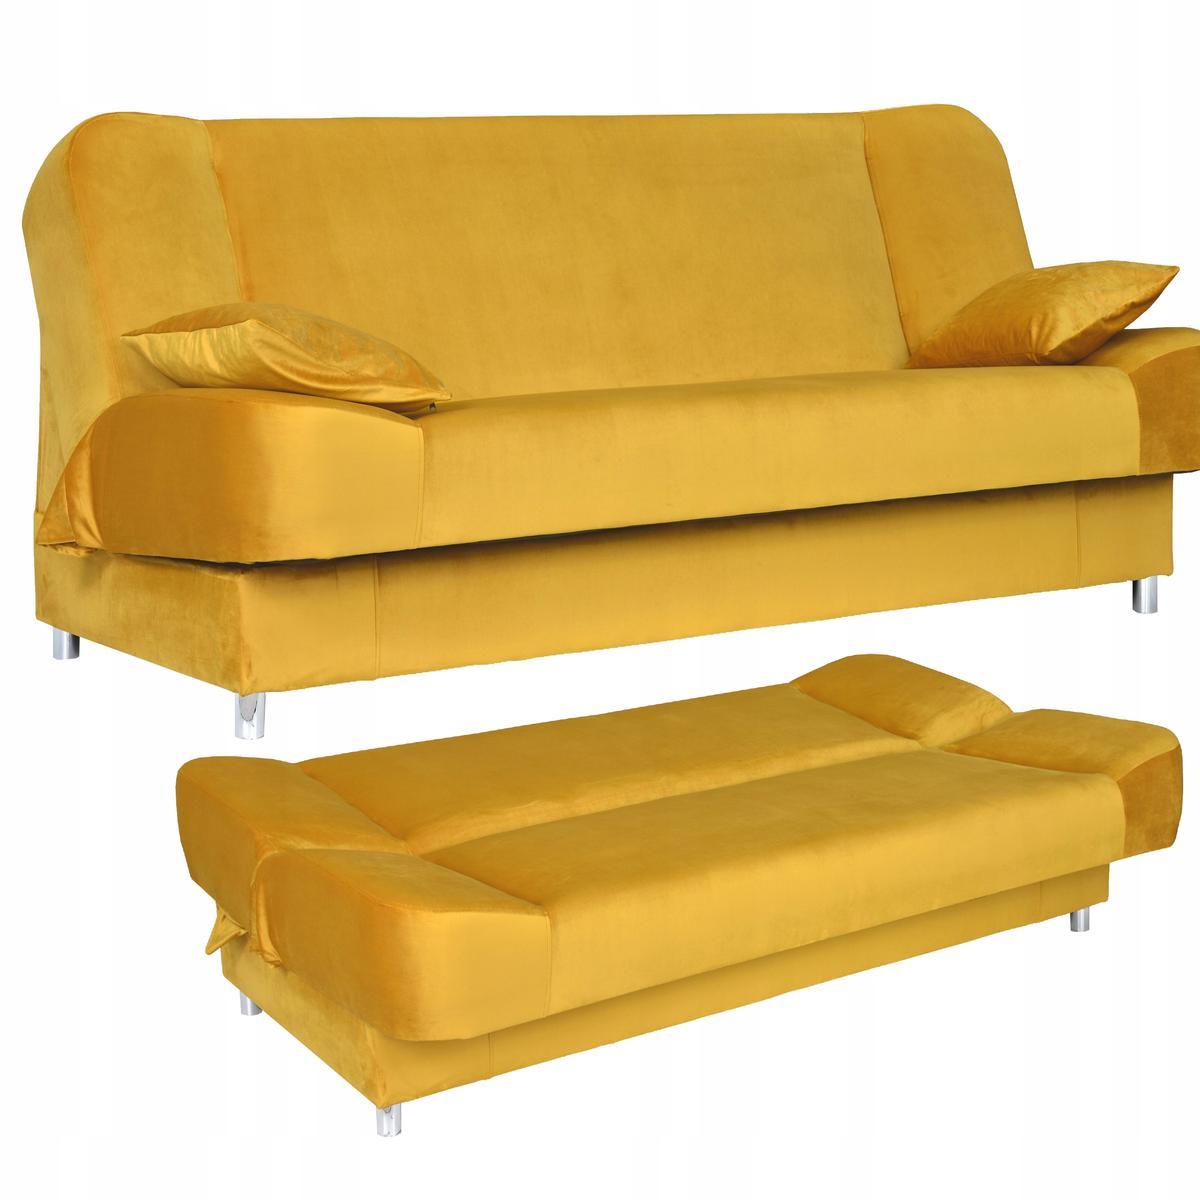 Wersalka SARA 200x95 cm żółta rozkładana kanapa z pojemnikiem sofa do salonu Royal nr. 1